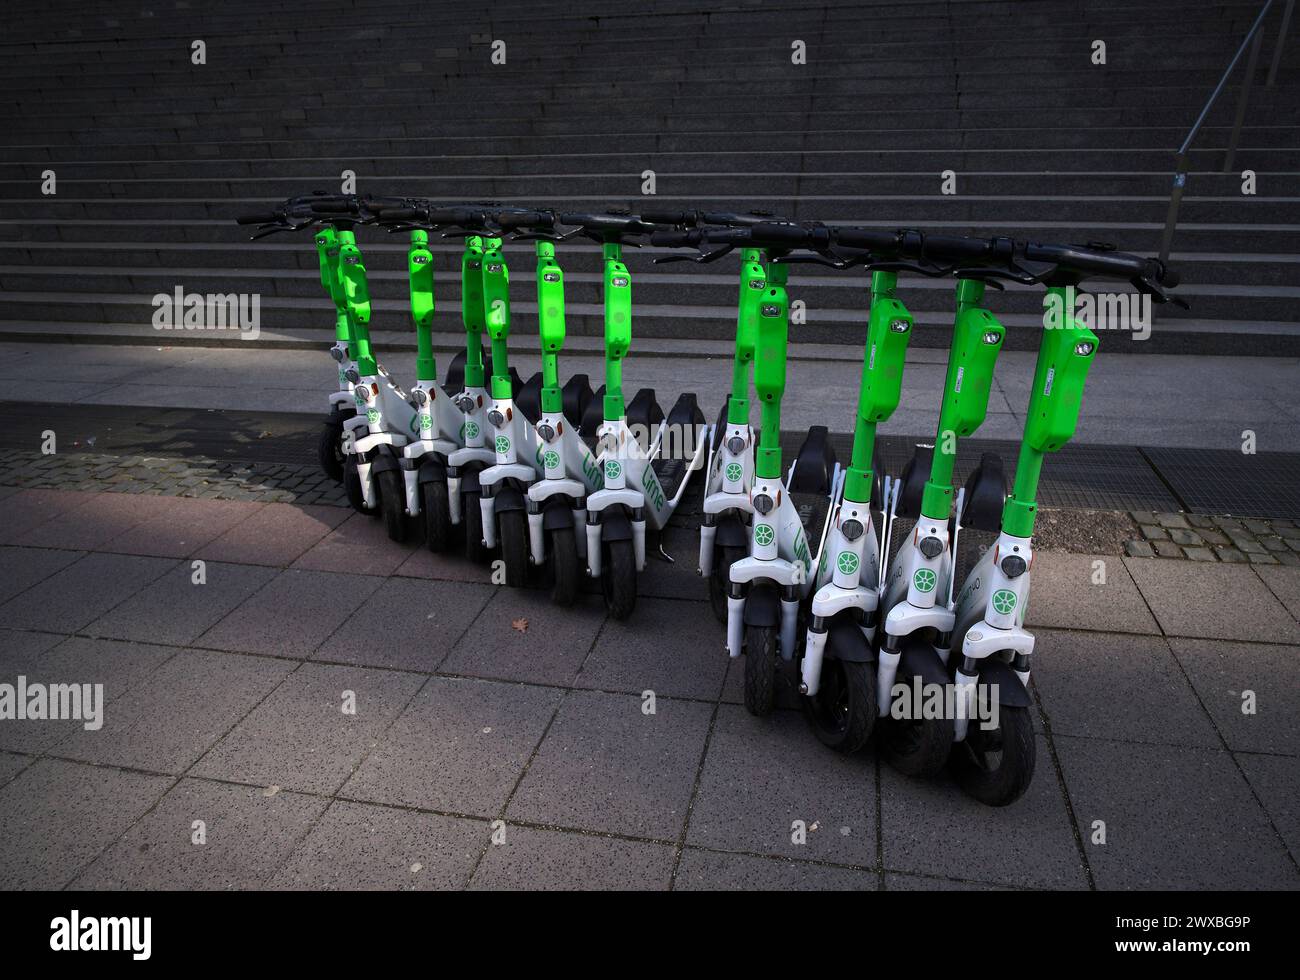 Diversi scooter elettrici parcheggiati a Lime, OnLime e Uber, Francoforte sul meno, Assia, Germania Foto Stock